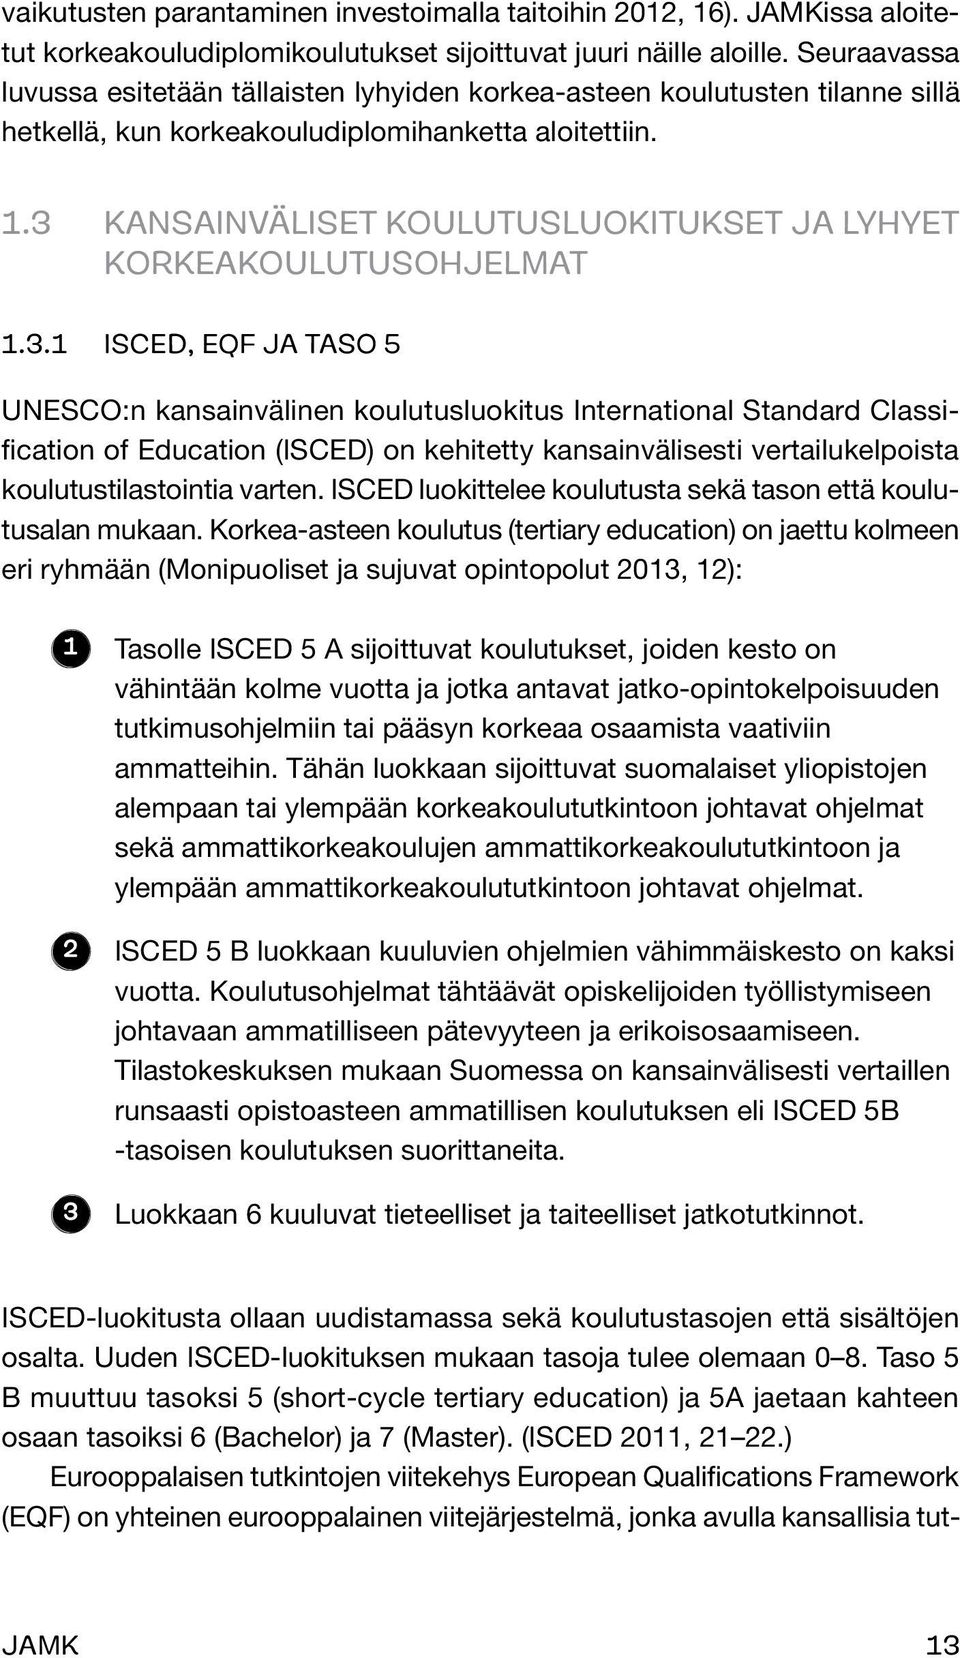 3 Kansainväliset koulutusluokitukset ja lyhyet korkeakoulutusohjelmat 1.3.1 ISCED, EQF ja taso 5 UNESCO:n kansainvälinen koulutusluokitus International Standard Classification of Education (ISCED) on